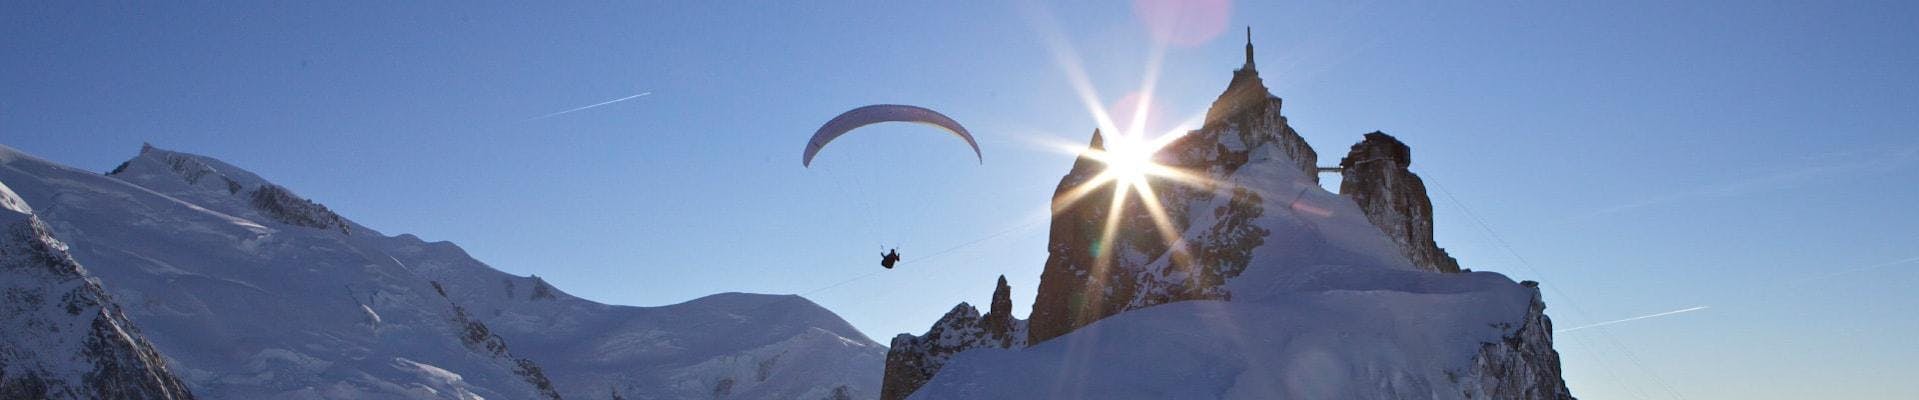 Un pilote de parapente de Kailash Parapente effectue un Vol Parapente Biplace depuis le Plan de l'Aiguille sur fond de montagne.